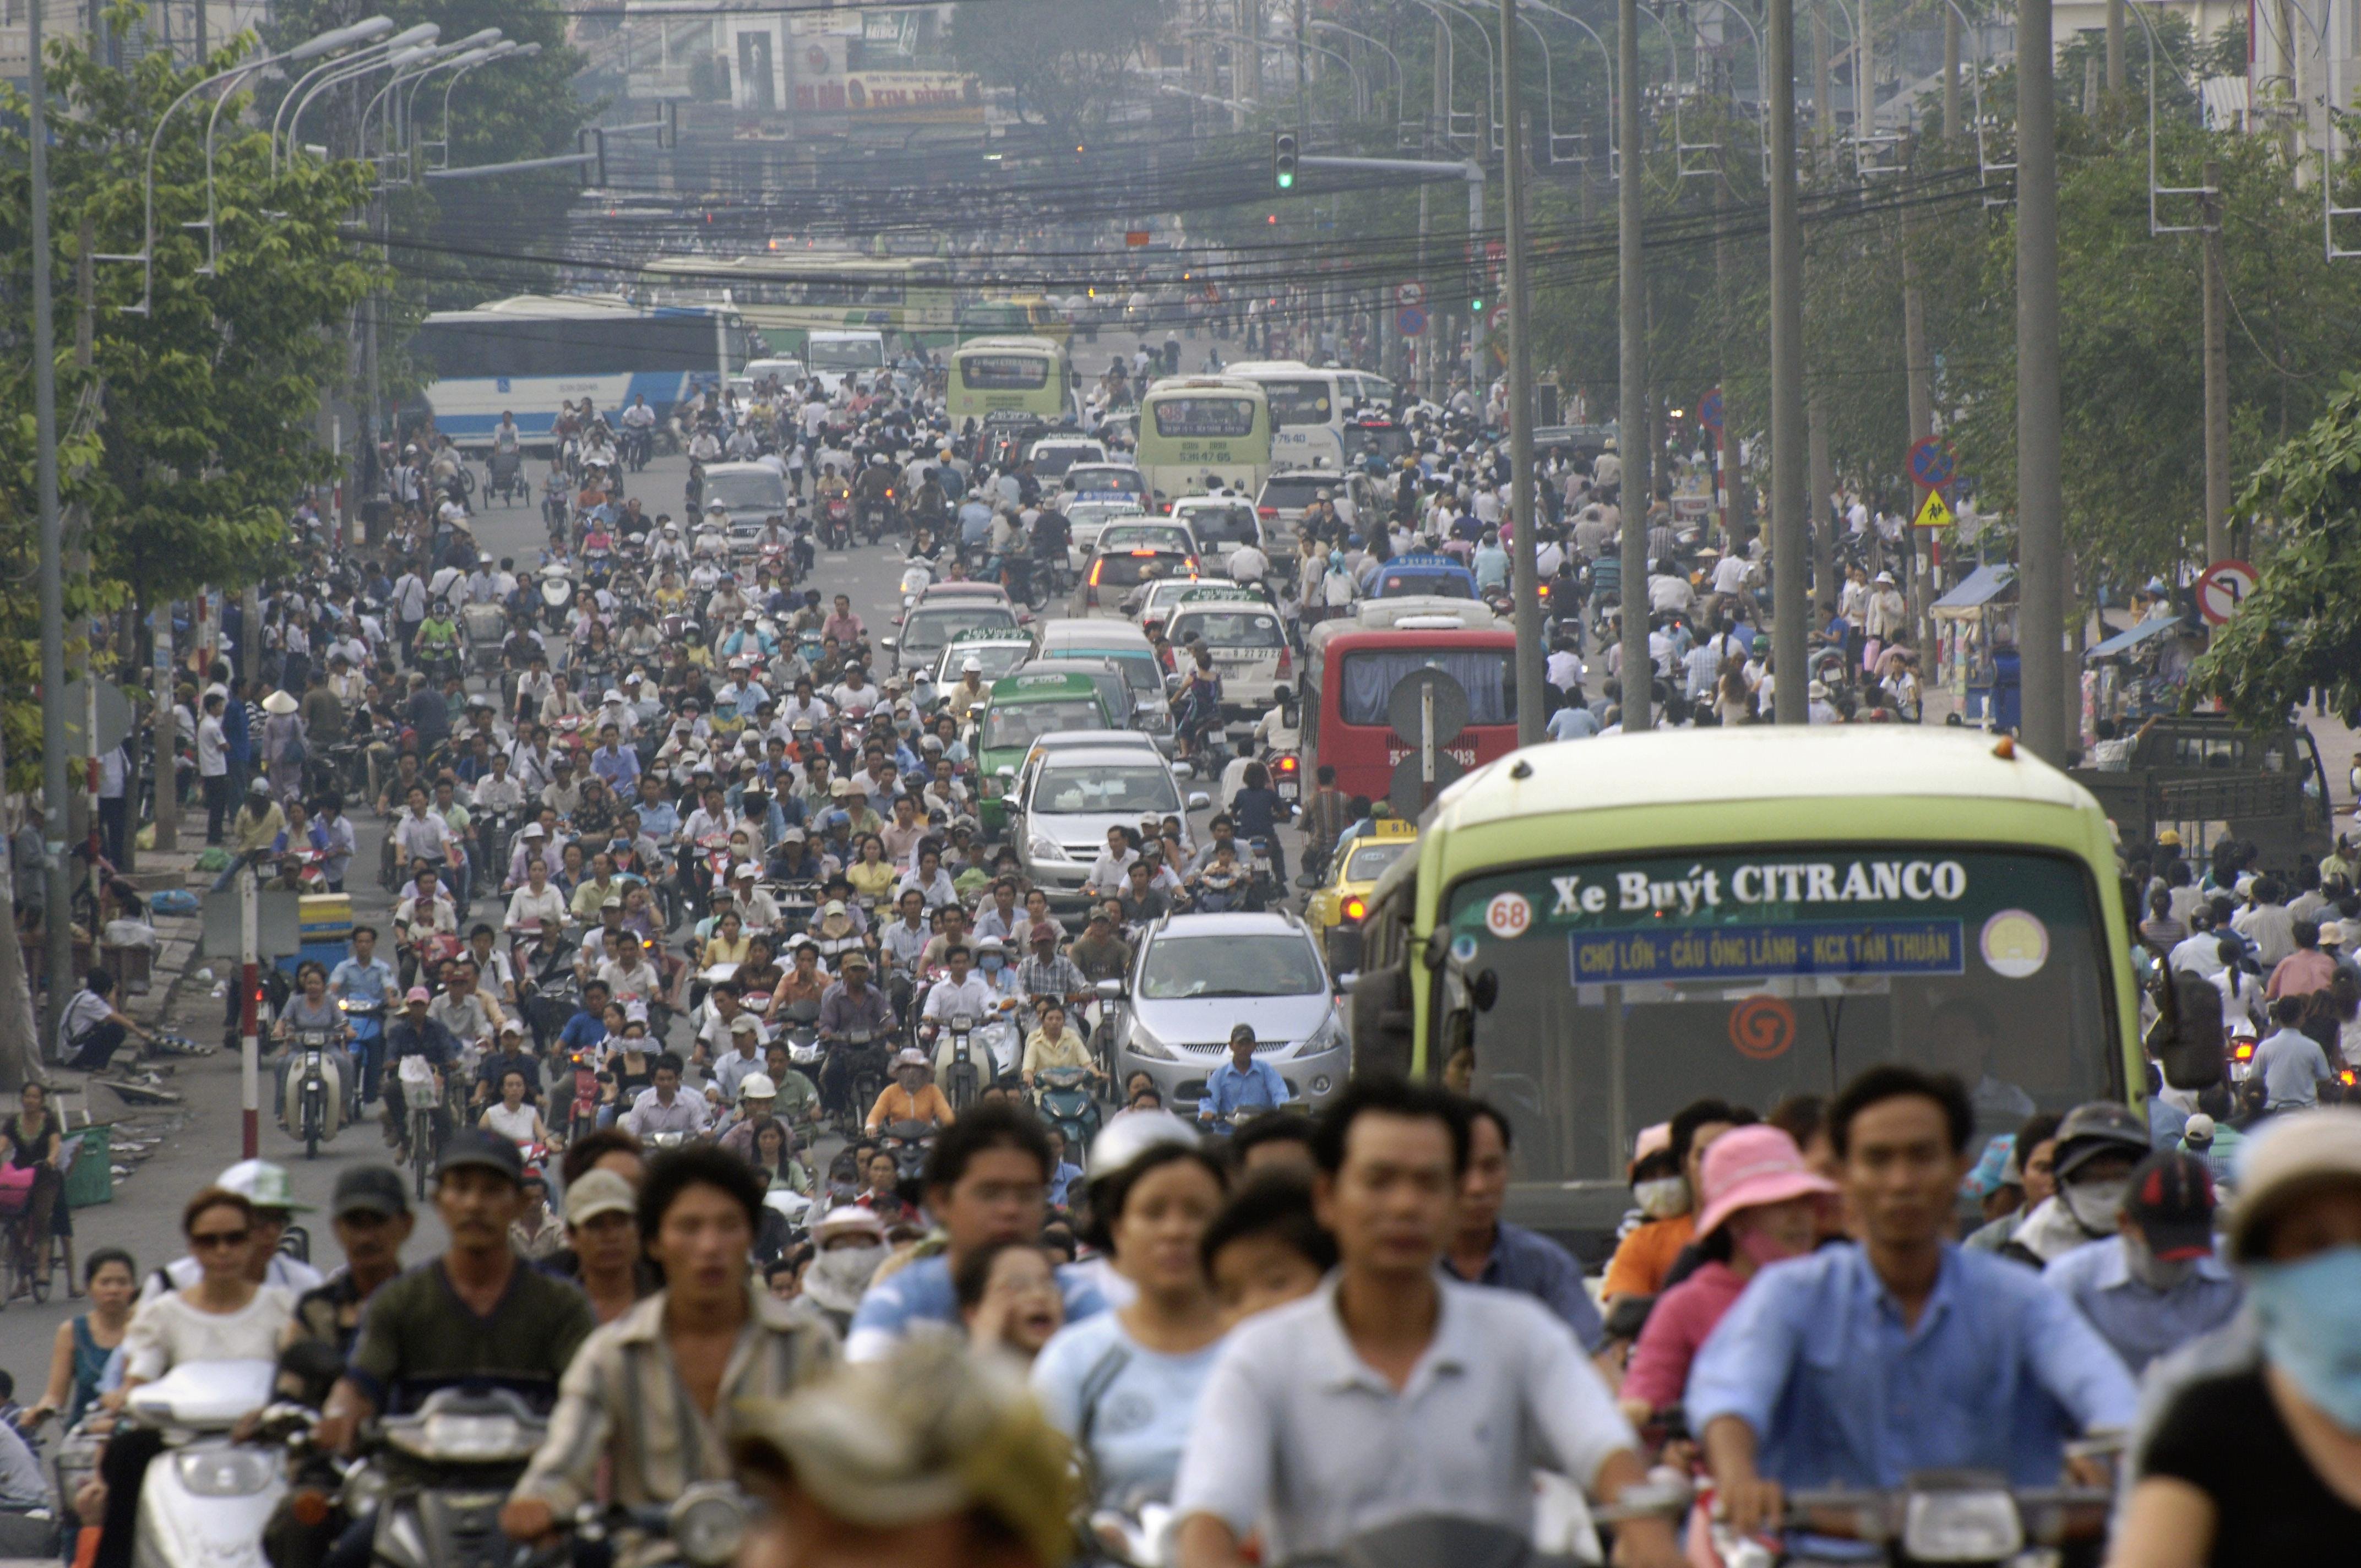 Blick auf den dichten Feierabendverkehr in Ho Chi Minh Stadt, die größte Stadt Vietnams. Mopeds führen hier zu erheblicher Feinstaubbelastung. Doch es geht auch anders: In der chinesischen Stadt Guangzhou sanken die Konzentrationen aromatischer Kohlenwasserstoffe in der Luft nach dem Verbot von Zwei-Takt-Mopeds im Jahr 2005 um mehr als 80 Prozent.